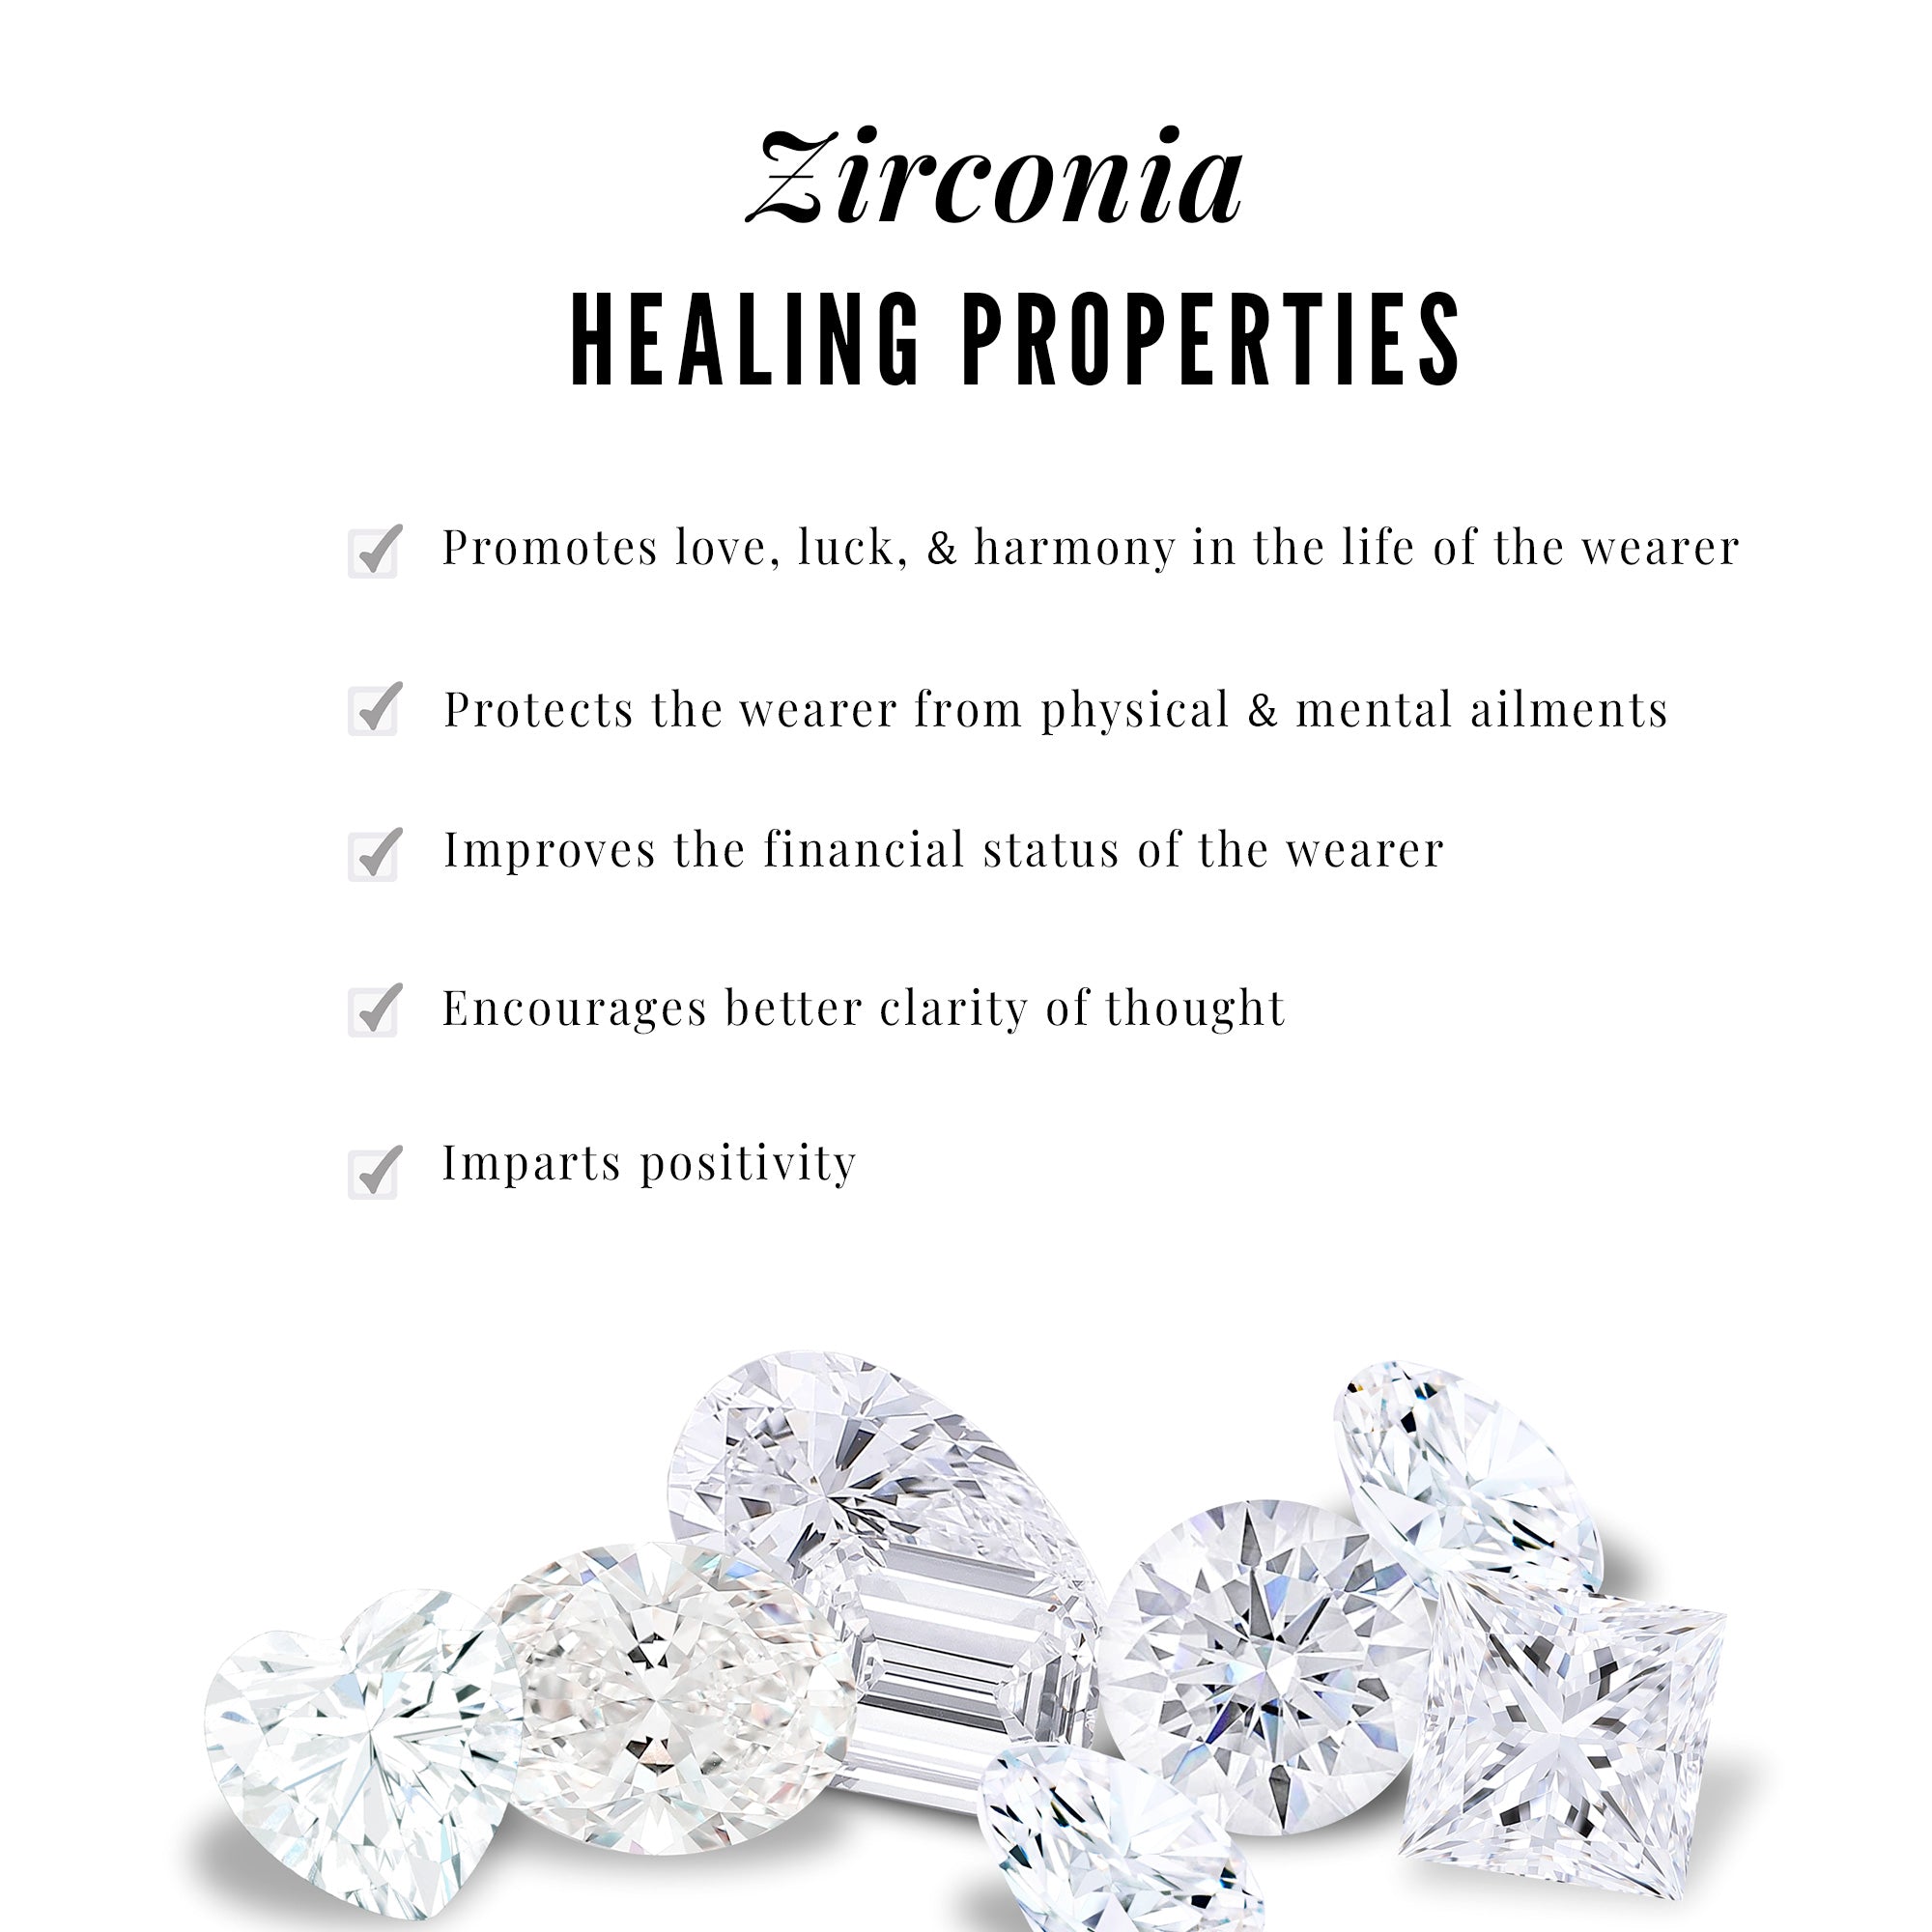 2 CT Baguette Cut Zircon Three Stone Dangle Earrings Zircon - ( AAAA ) - Quality - Rosec Jewels